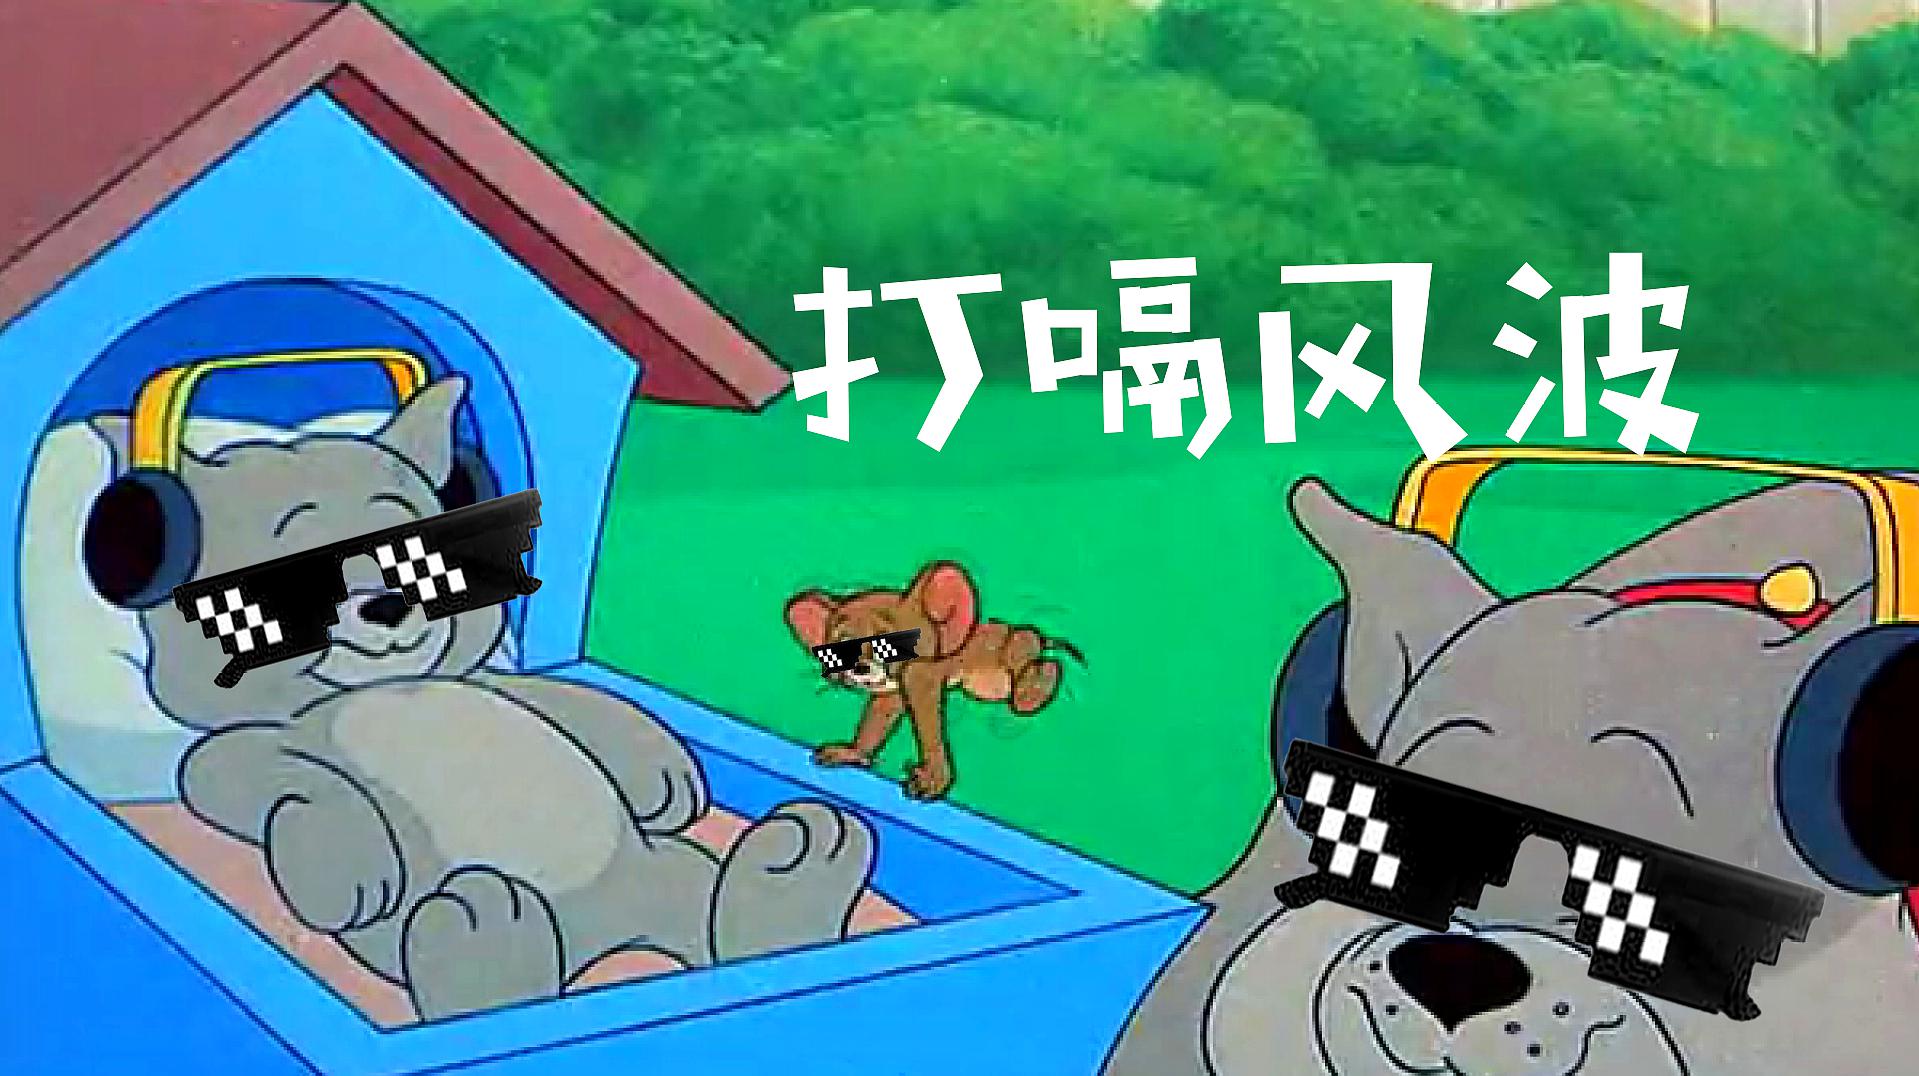 四川话猫和老鼠:老鼠的儿子会打洞,那狗的儿子呢?会打嗝!